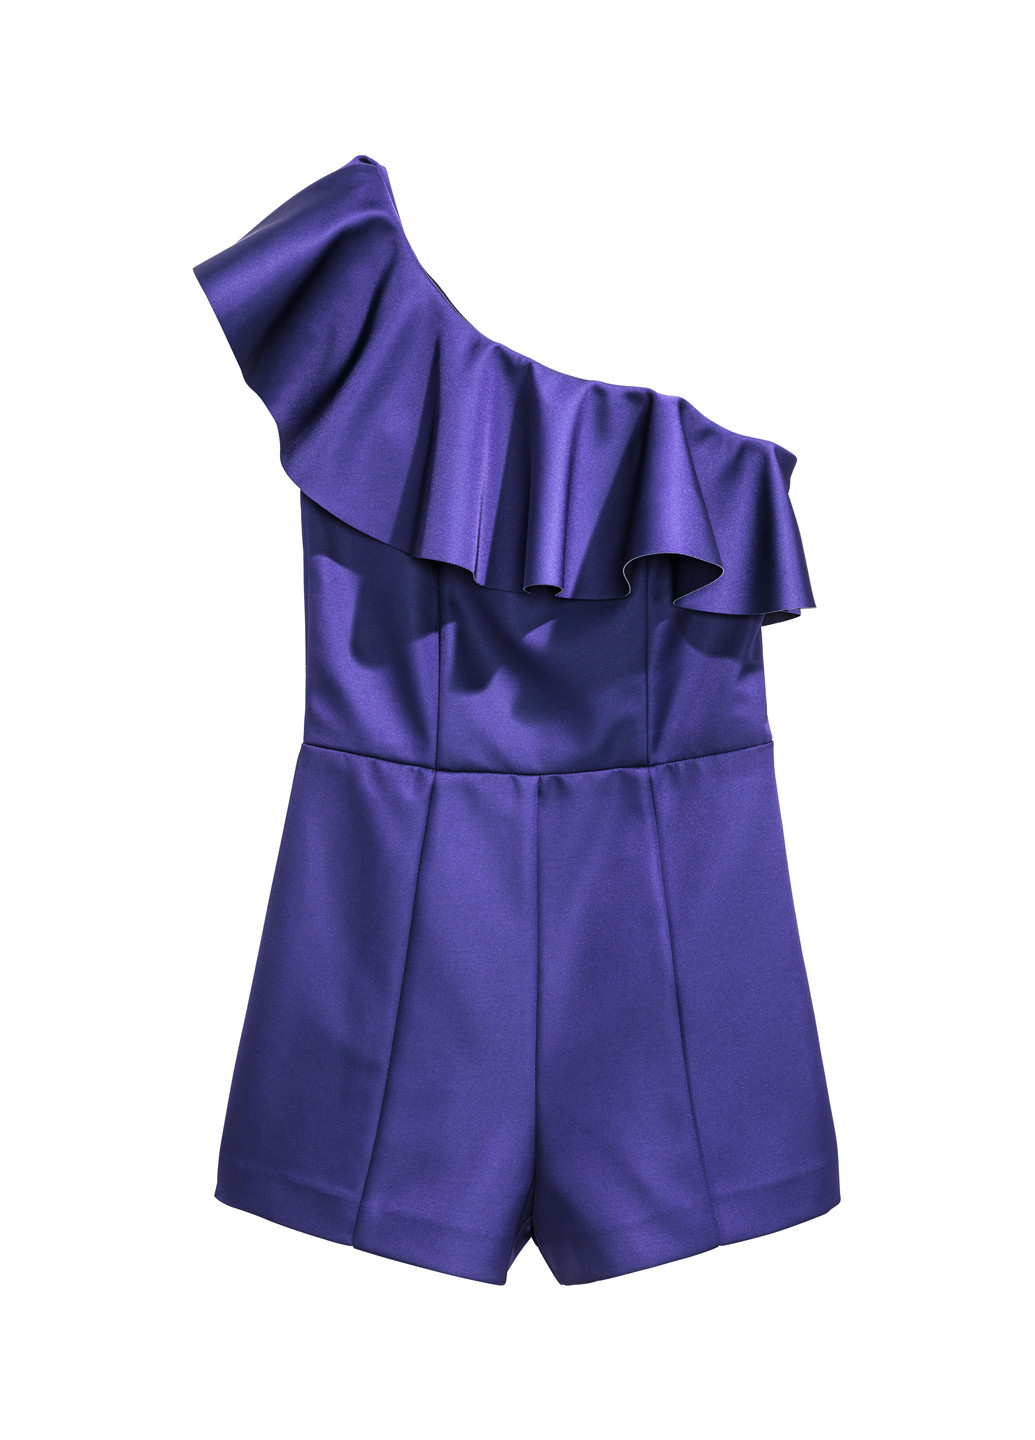 Комбинезон H&M комбинезон-шорты однотонный фиолетовый кэжуал полиэстер